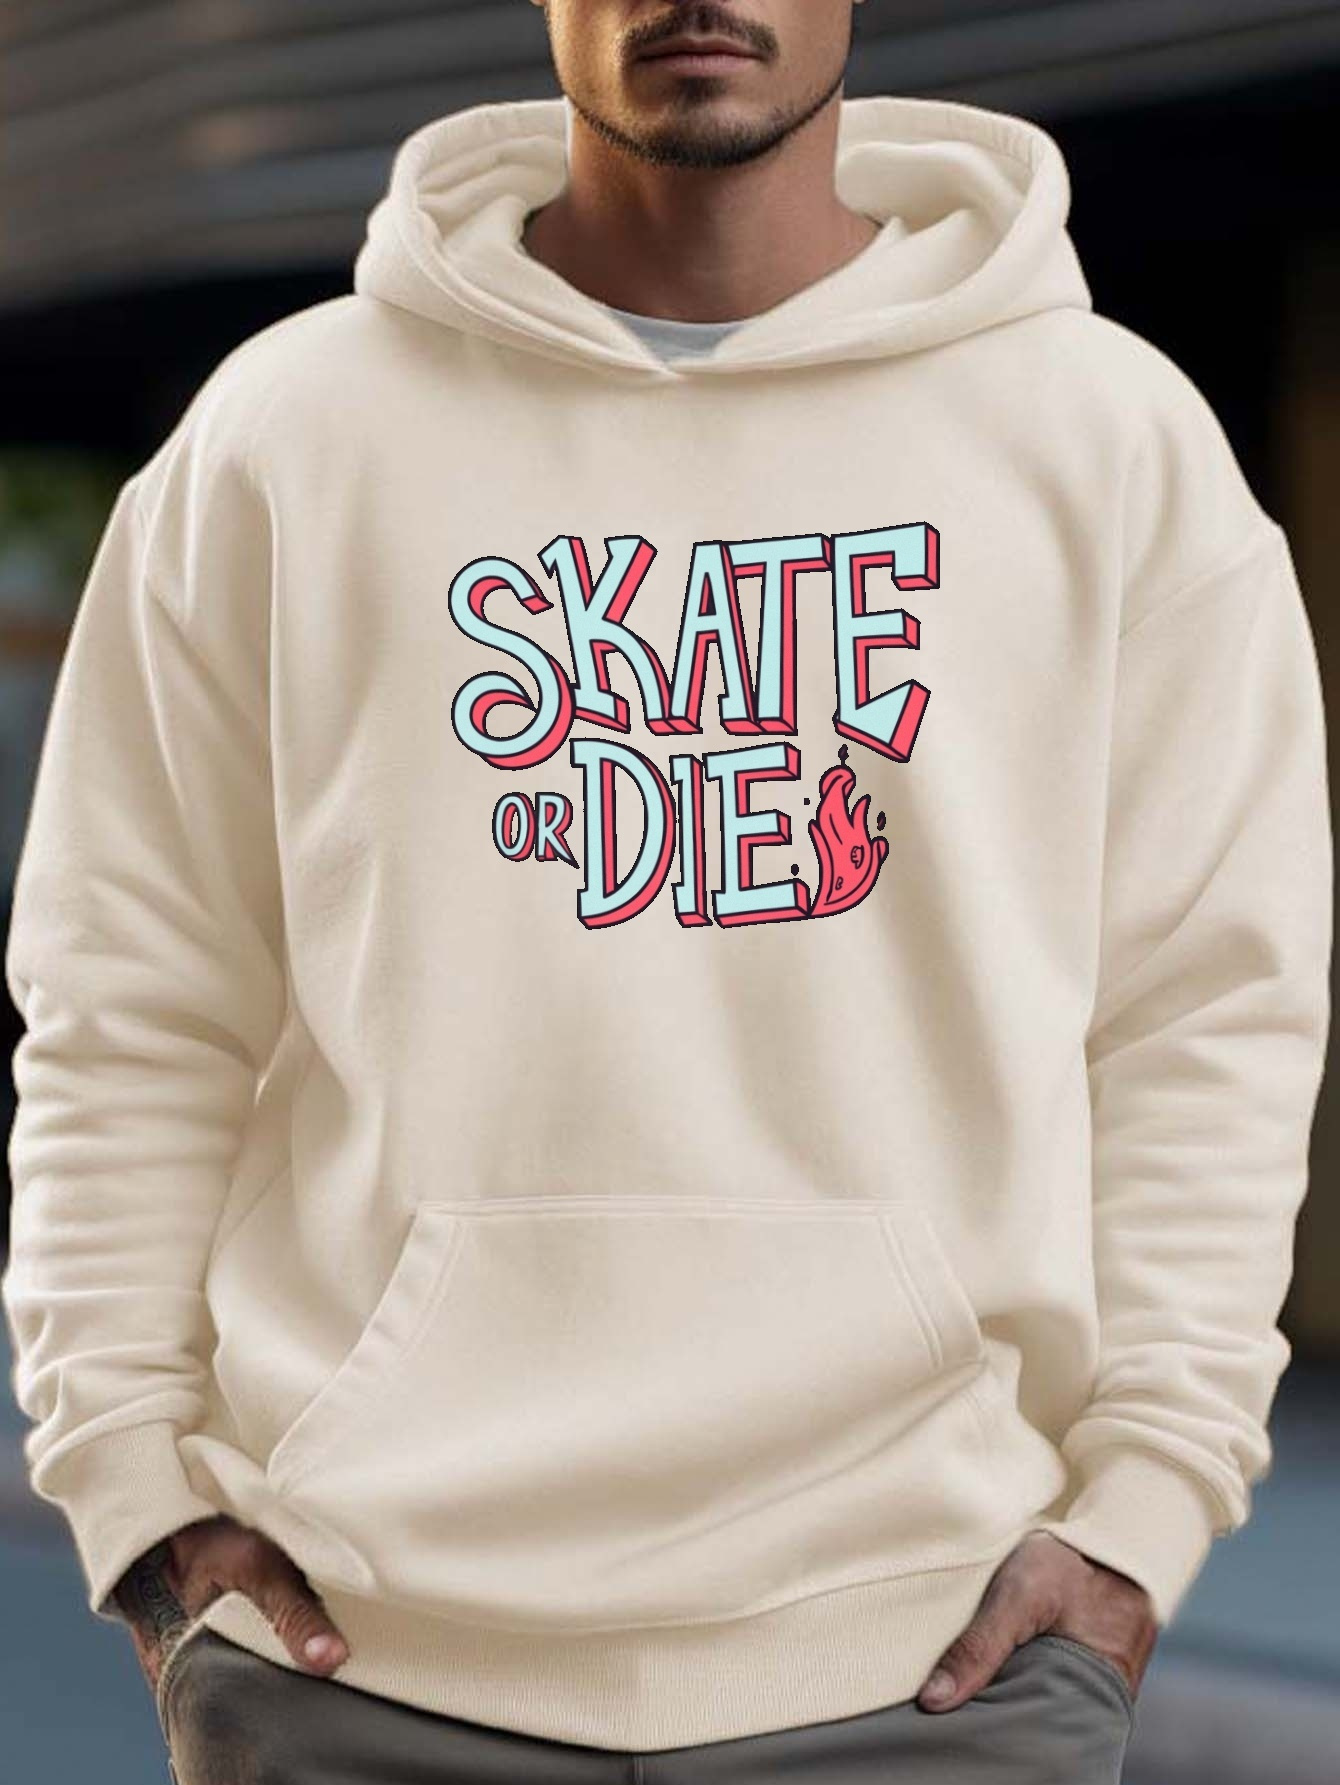 Men's Hoodies & Fleece - Skate & Casual Sweatshirts